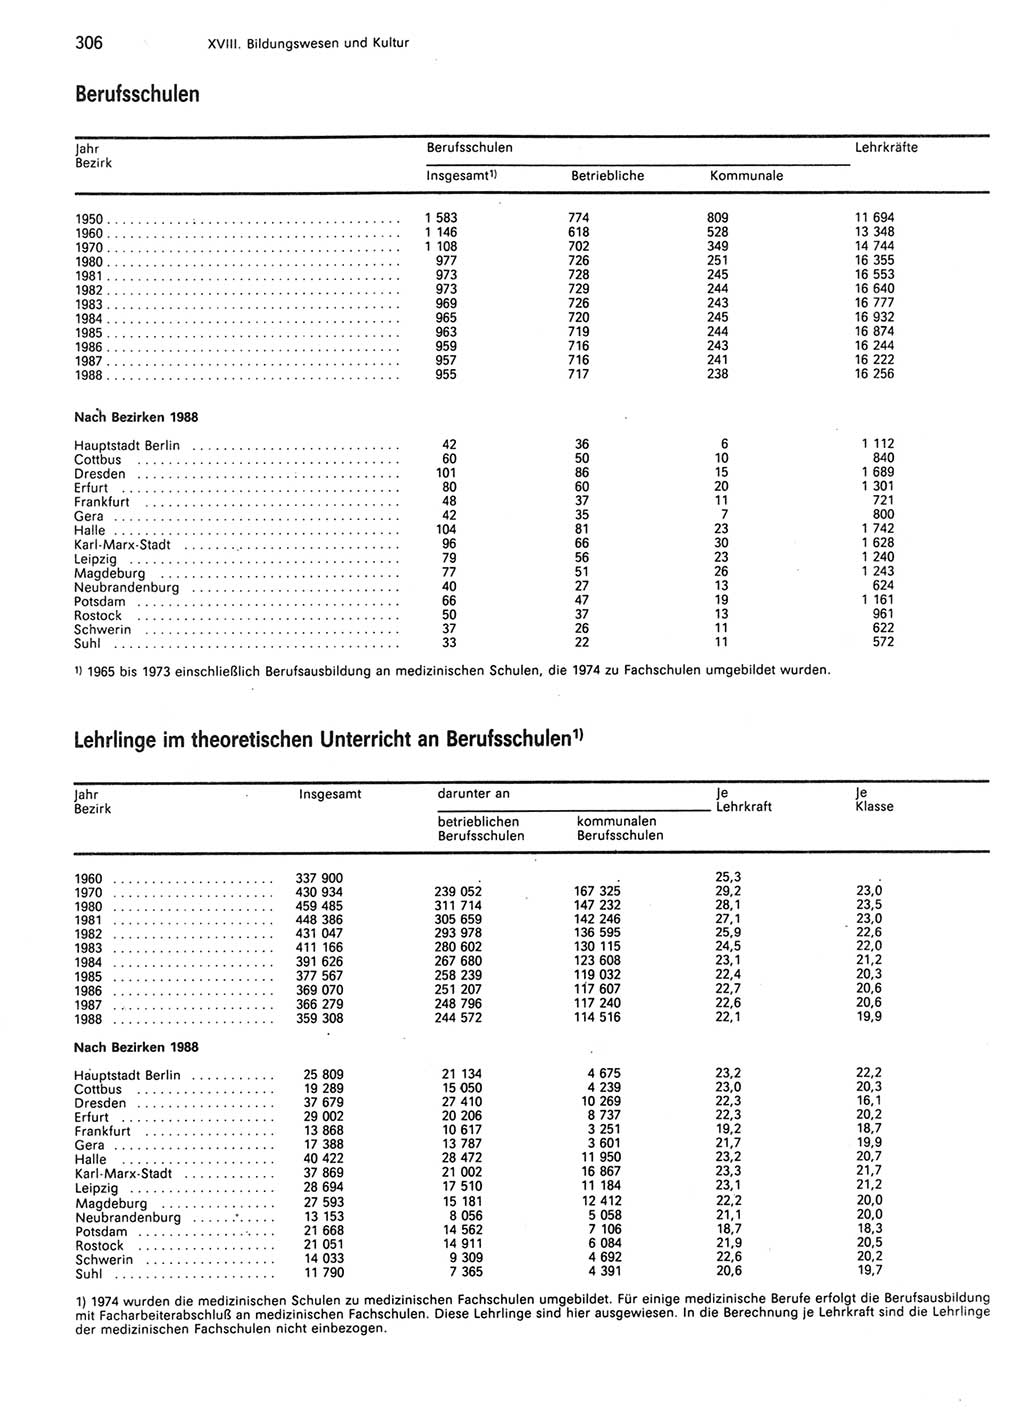 Statistisches Jahrbuch der Deutschen Demokratischen Republik (DDR) 1989, Seite 306 (Stat. Jb. DDR 1989, S. 306)